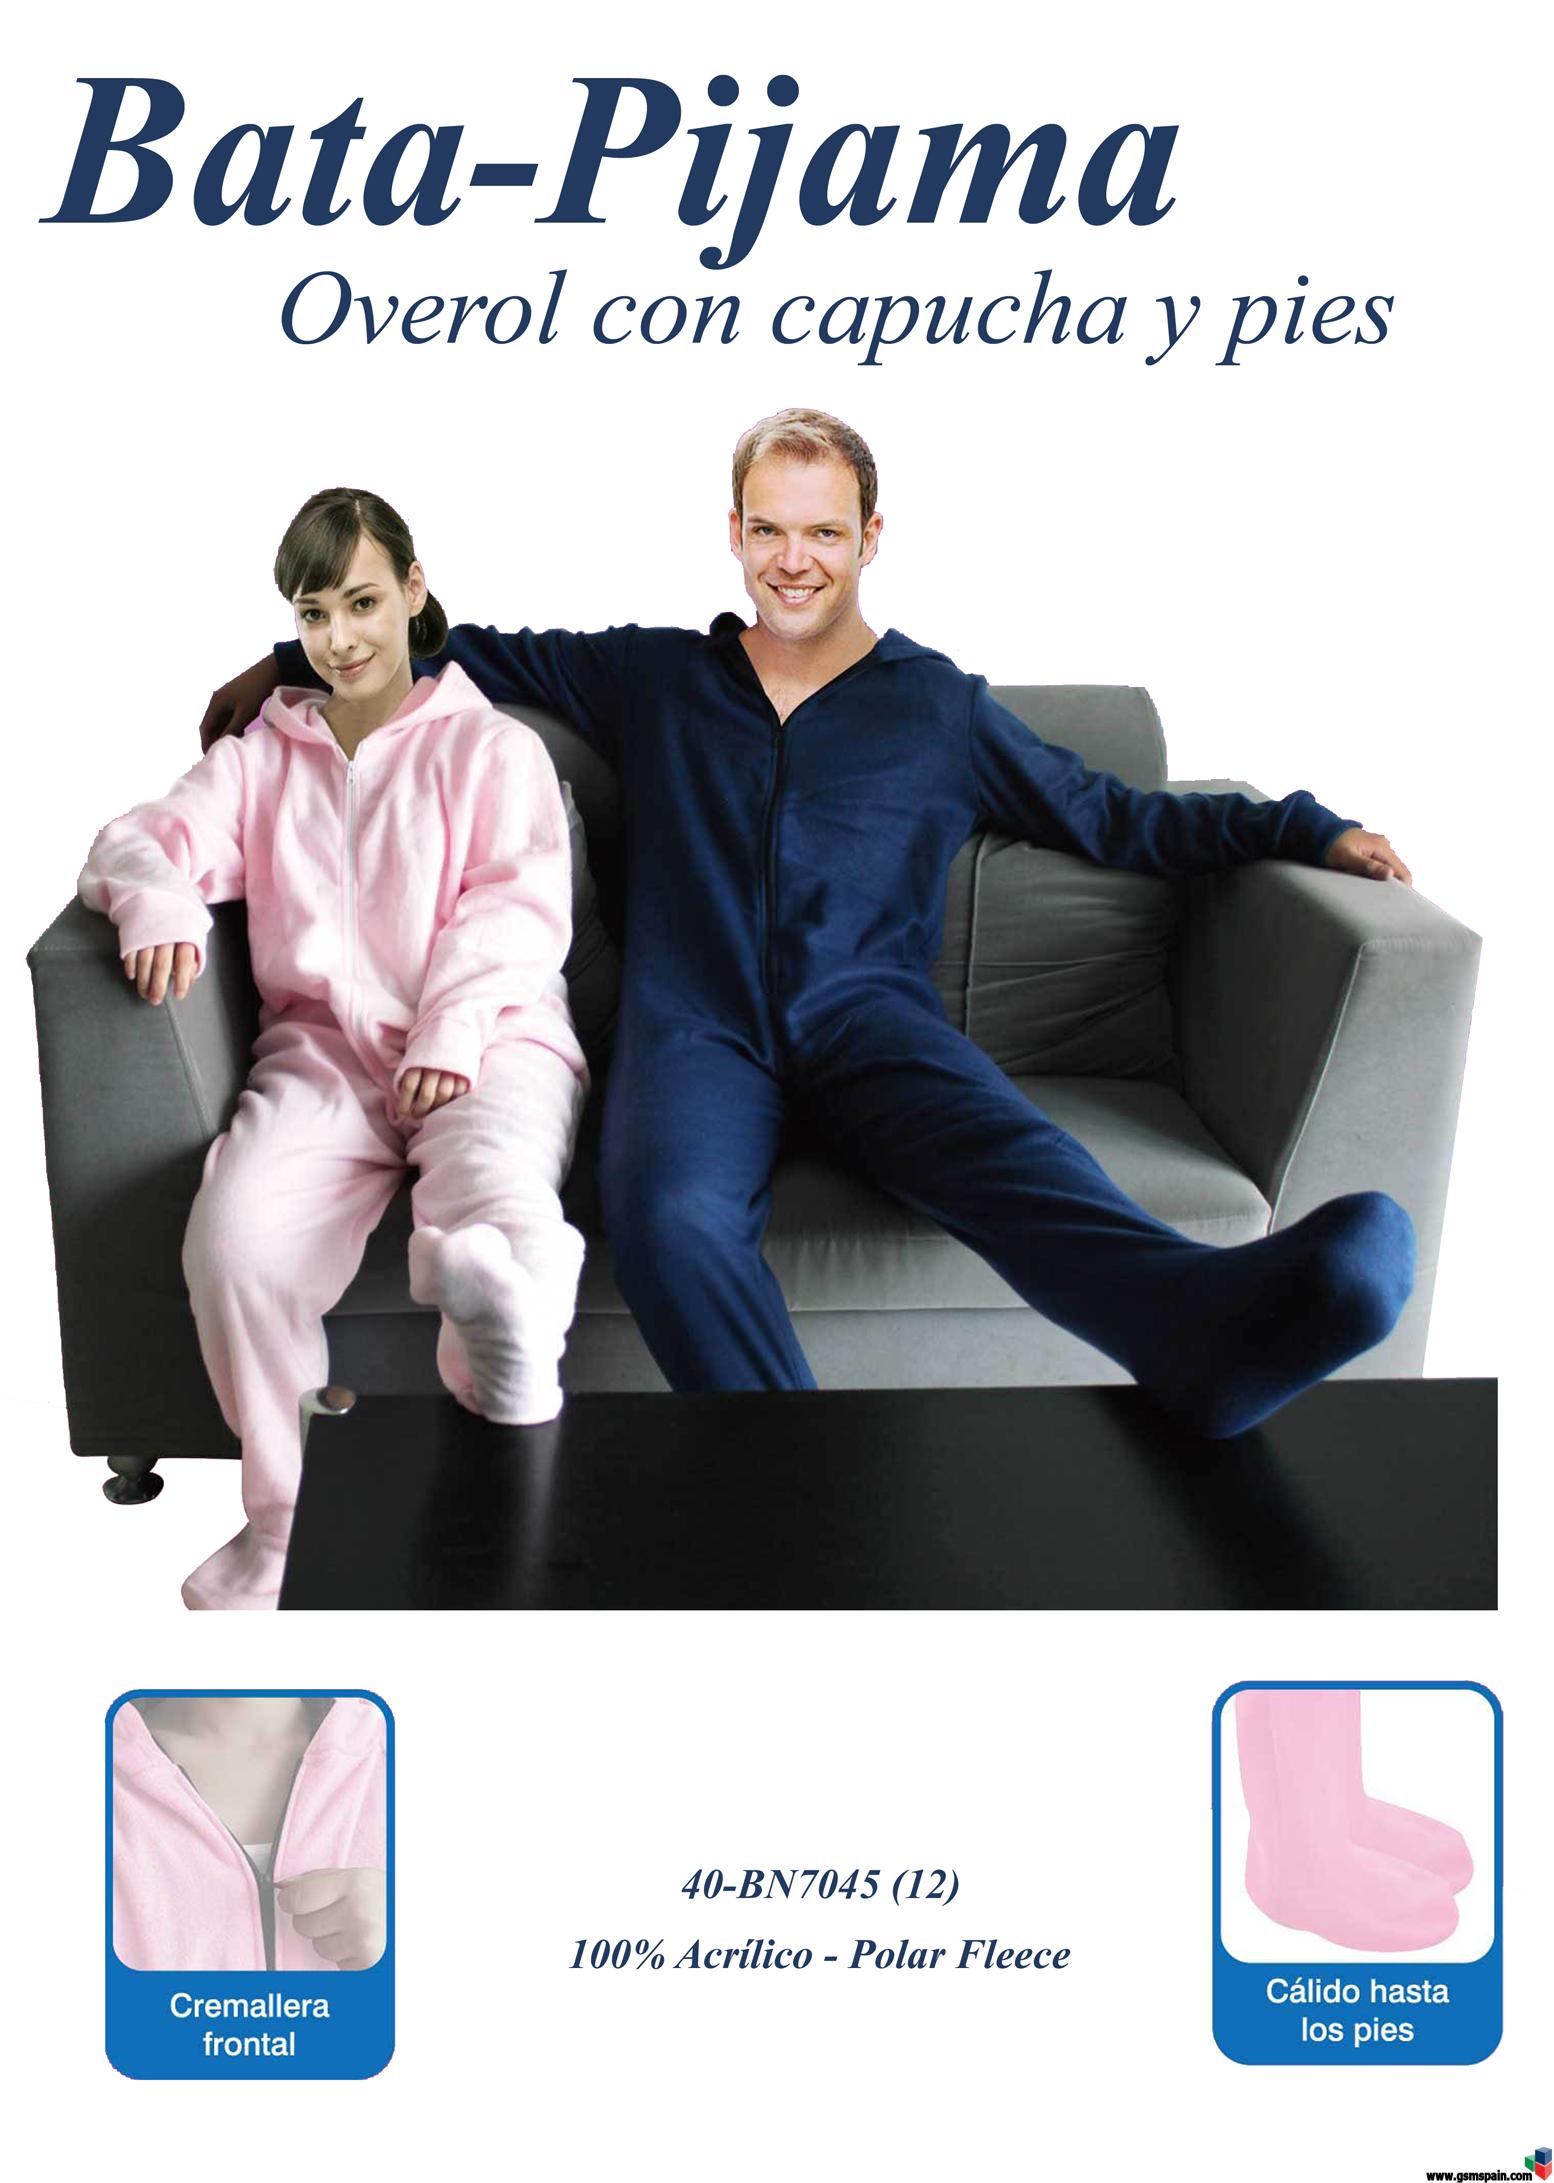 [VENDO] pijamas Lazy Cozy tipo batamanta, rosa o azul, el mejor regalo esta navidad